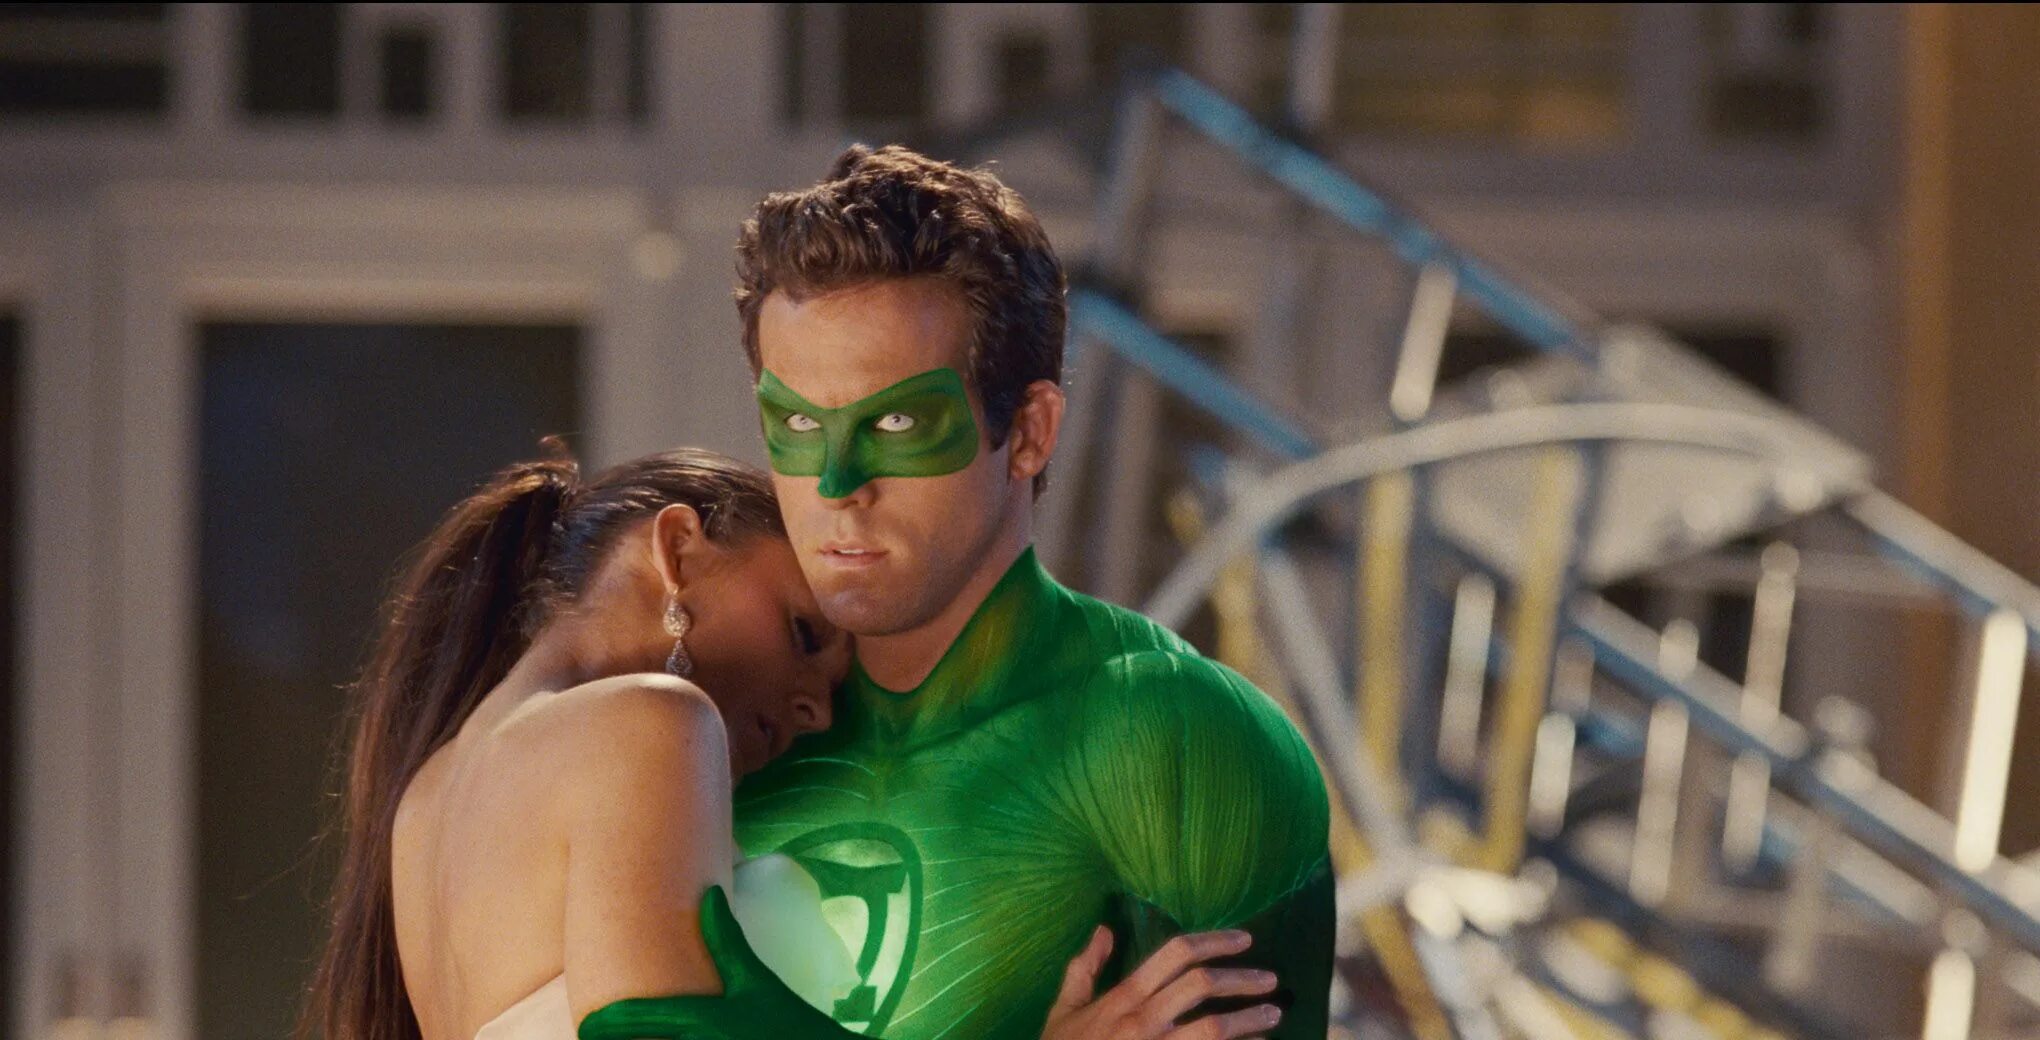 Зеленый фонарь (2011) Green Lantern. Блейк Лайвли зеленый фонарь. Любовь в зеленой полночи